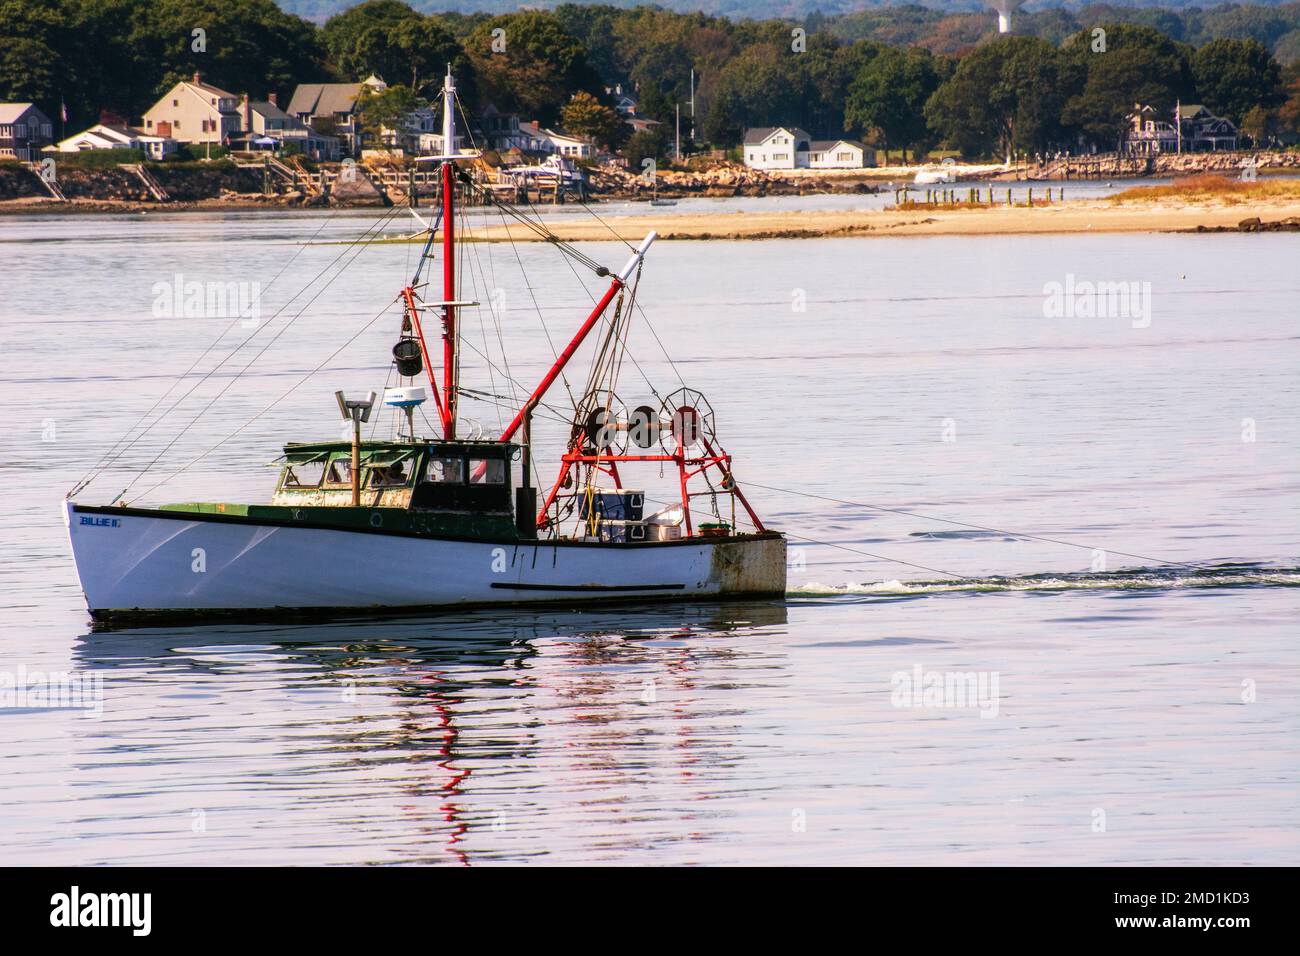 Newport Ri y Narragansett Bay muestran embarcaciones de ocupaciones Foto de stock